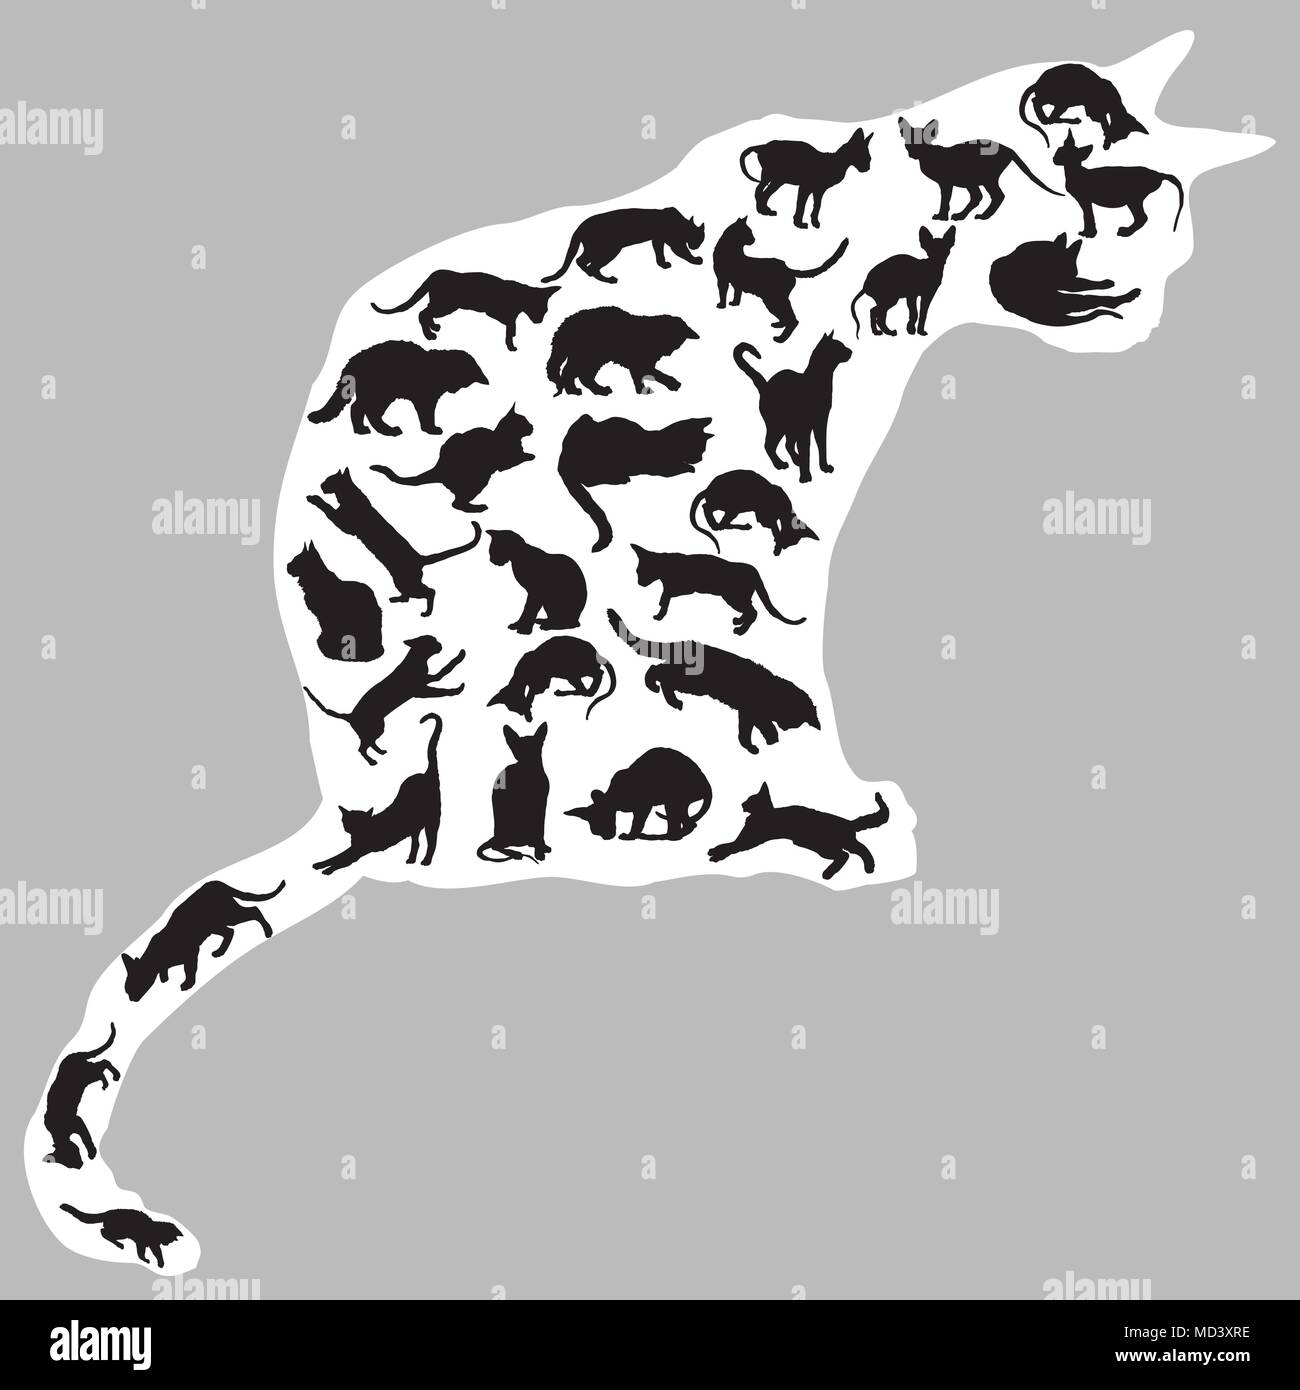 Satz von verschiedenen isolierten Katzen Silhouetten (Sitzen, Stehen, Liegen, spielen) in der Farbe schwarz in großen Sitzung Silhouette der Katze in der Farbe weiß. Gr Stock Vektor